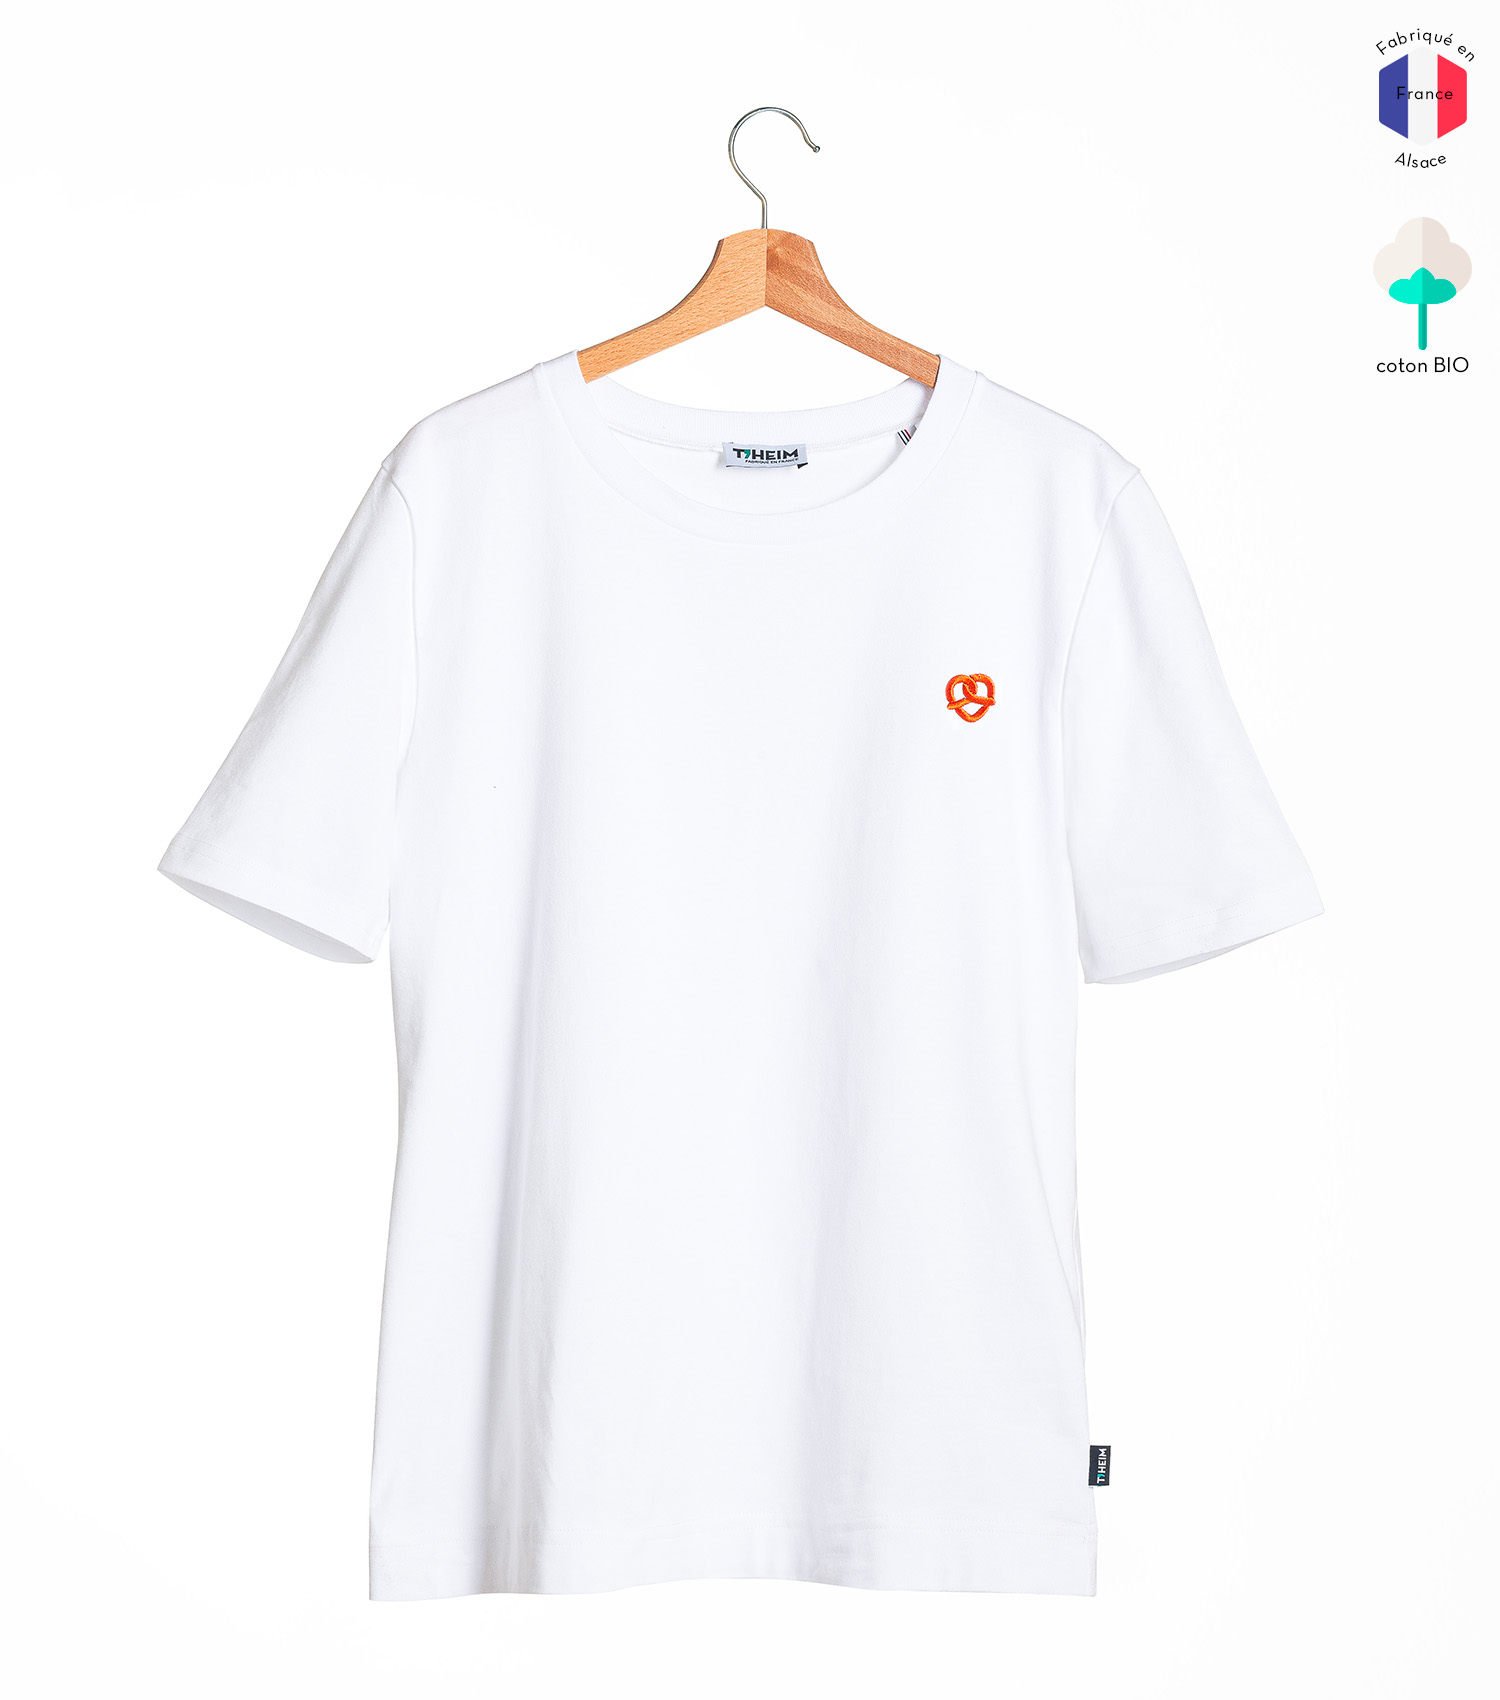 theim-tshirt-mixte-blanc-broderie-bretzel-5-1500x1700